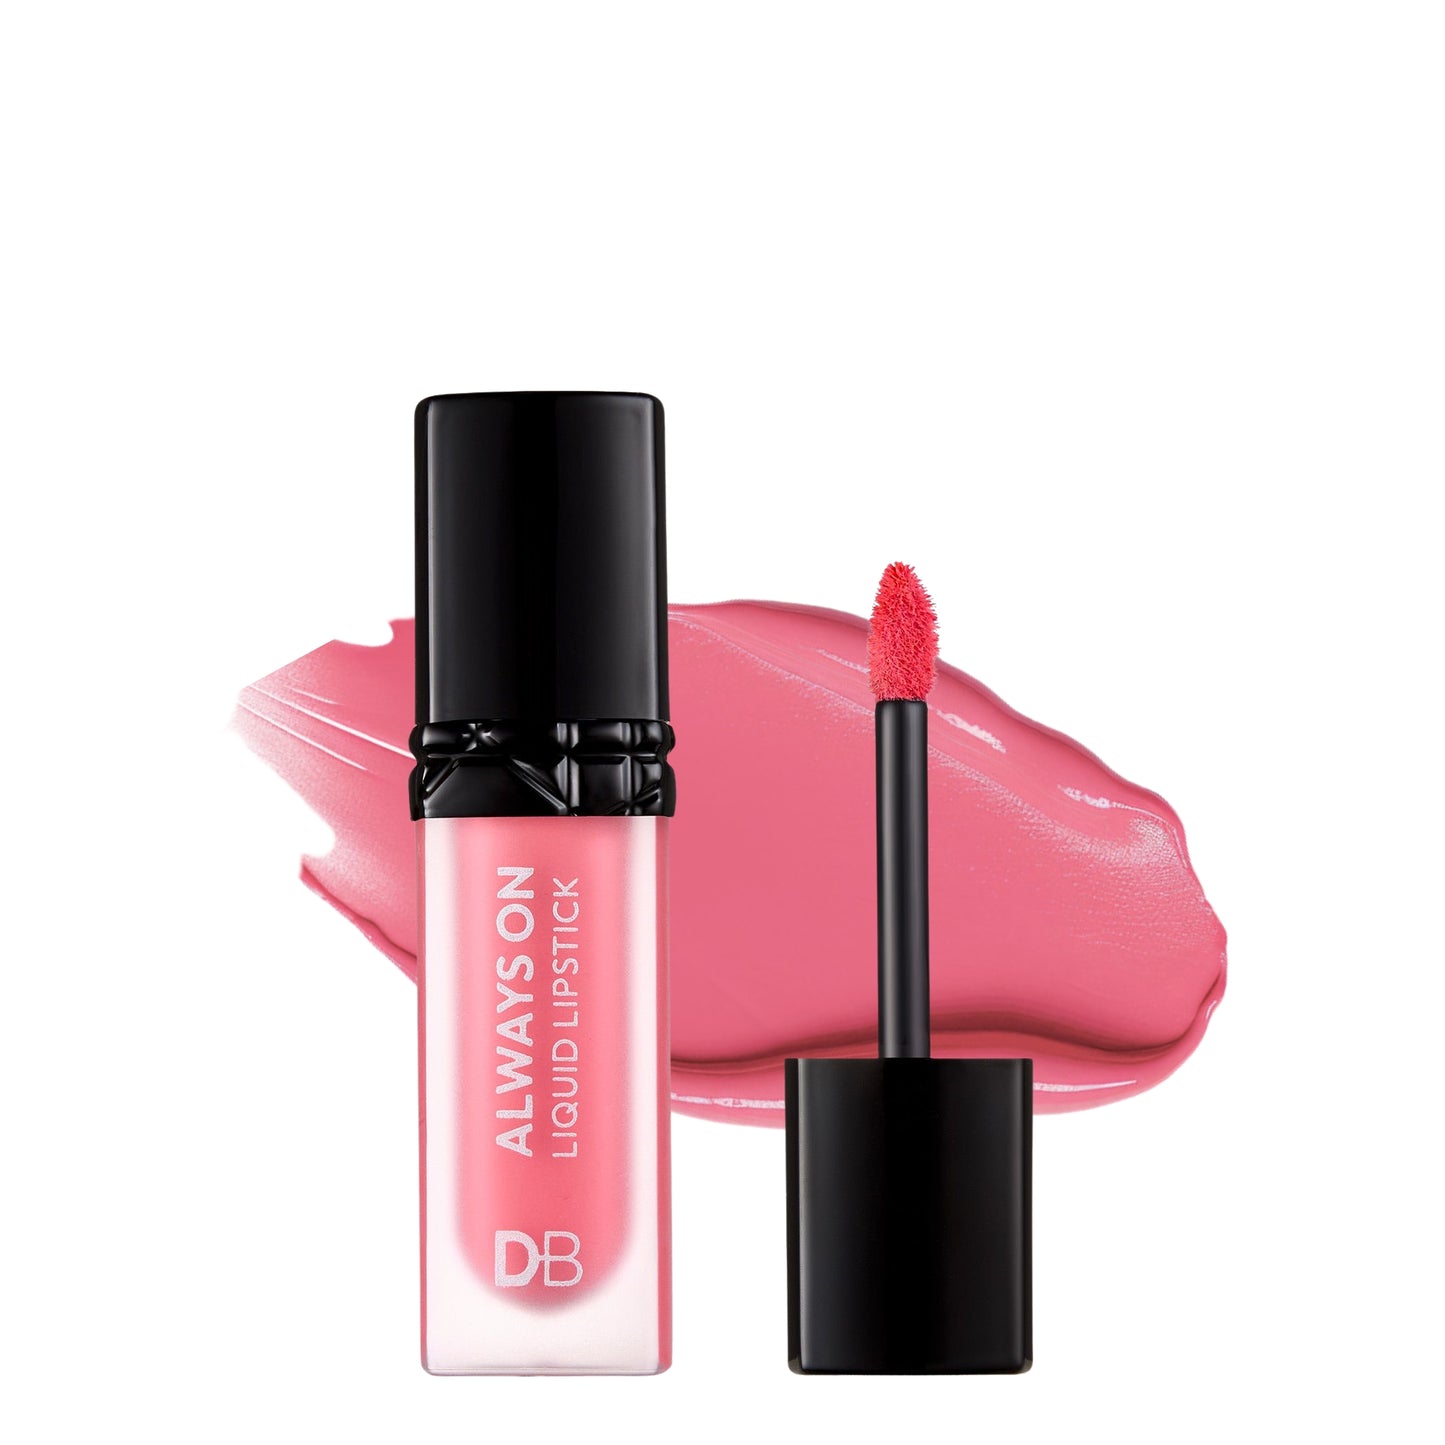 Always On Liquid Lipstick (Star) | DB Cosmetics | Thumbnail